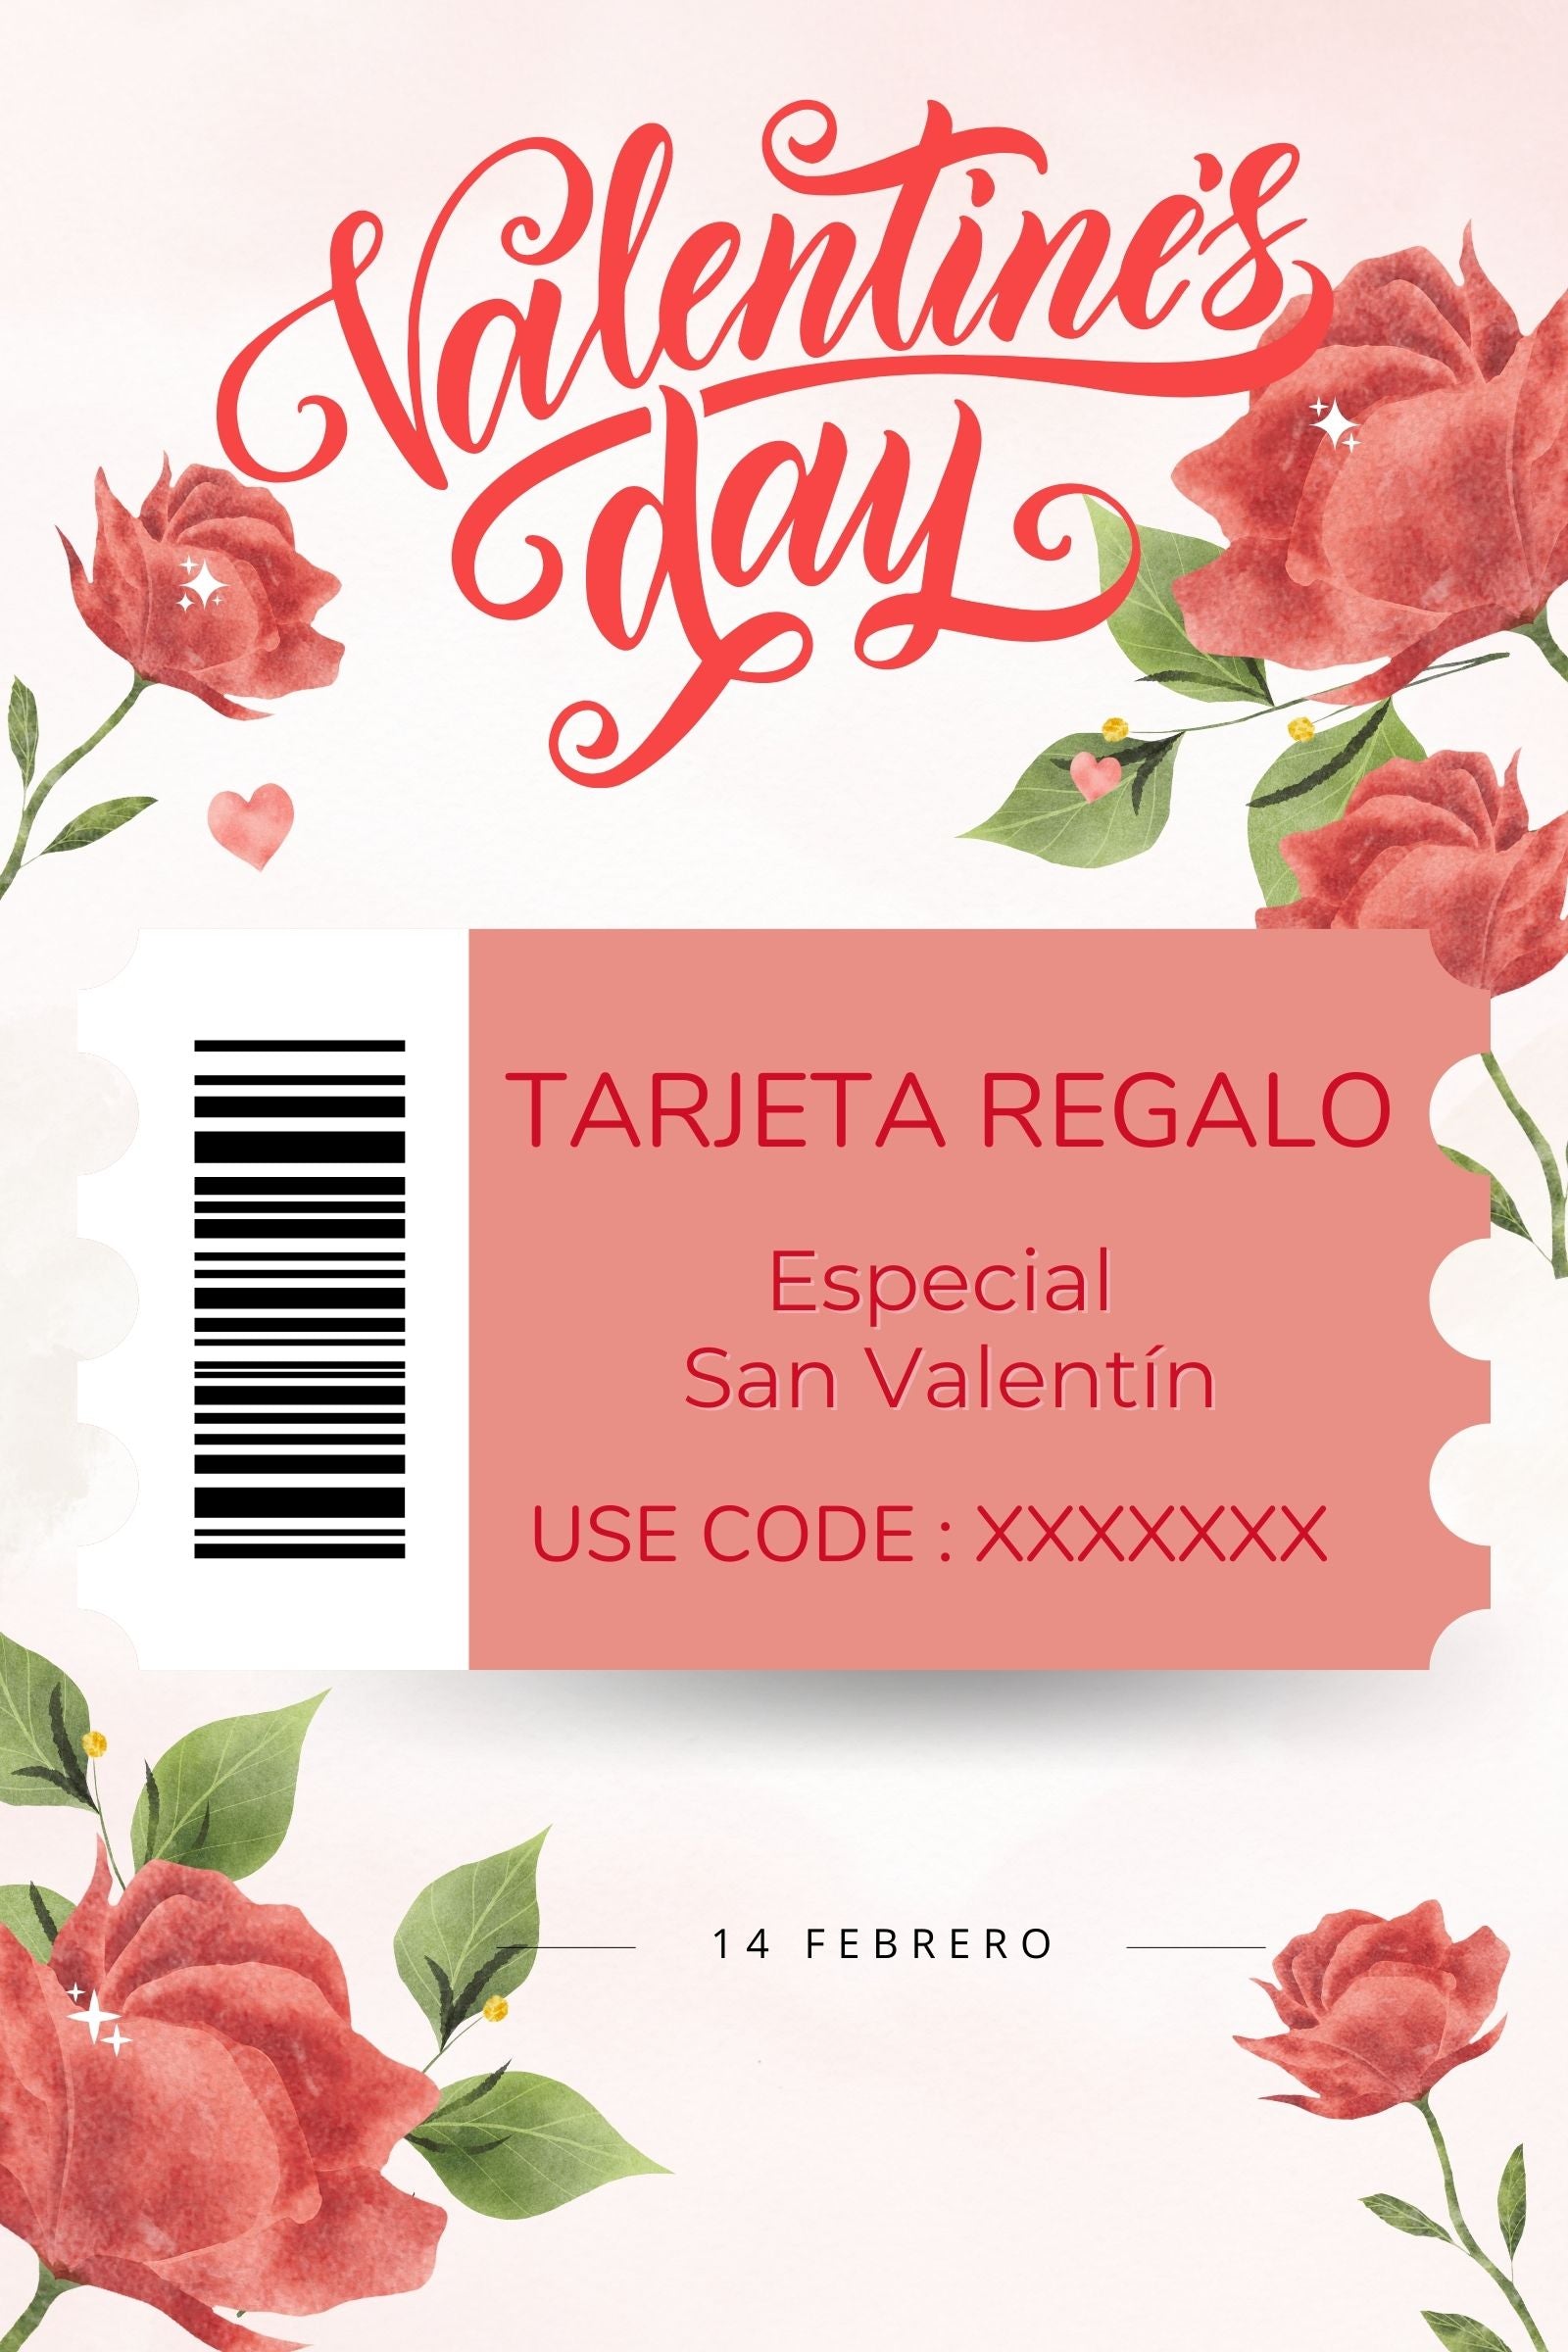 Tarjeta regalo especial San Valentin Lolitas&L - lolitasyl.com